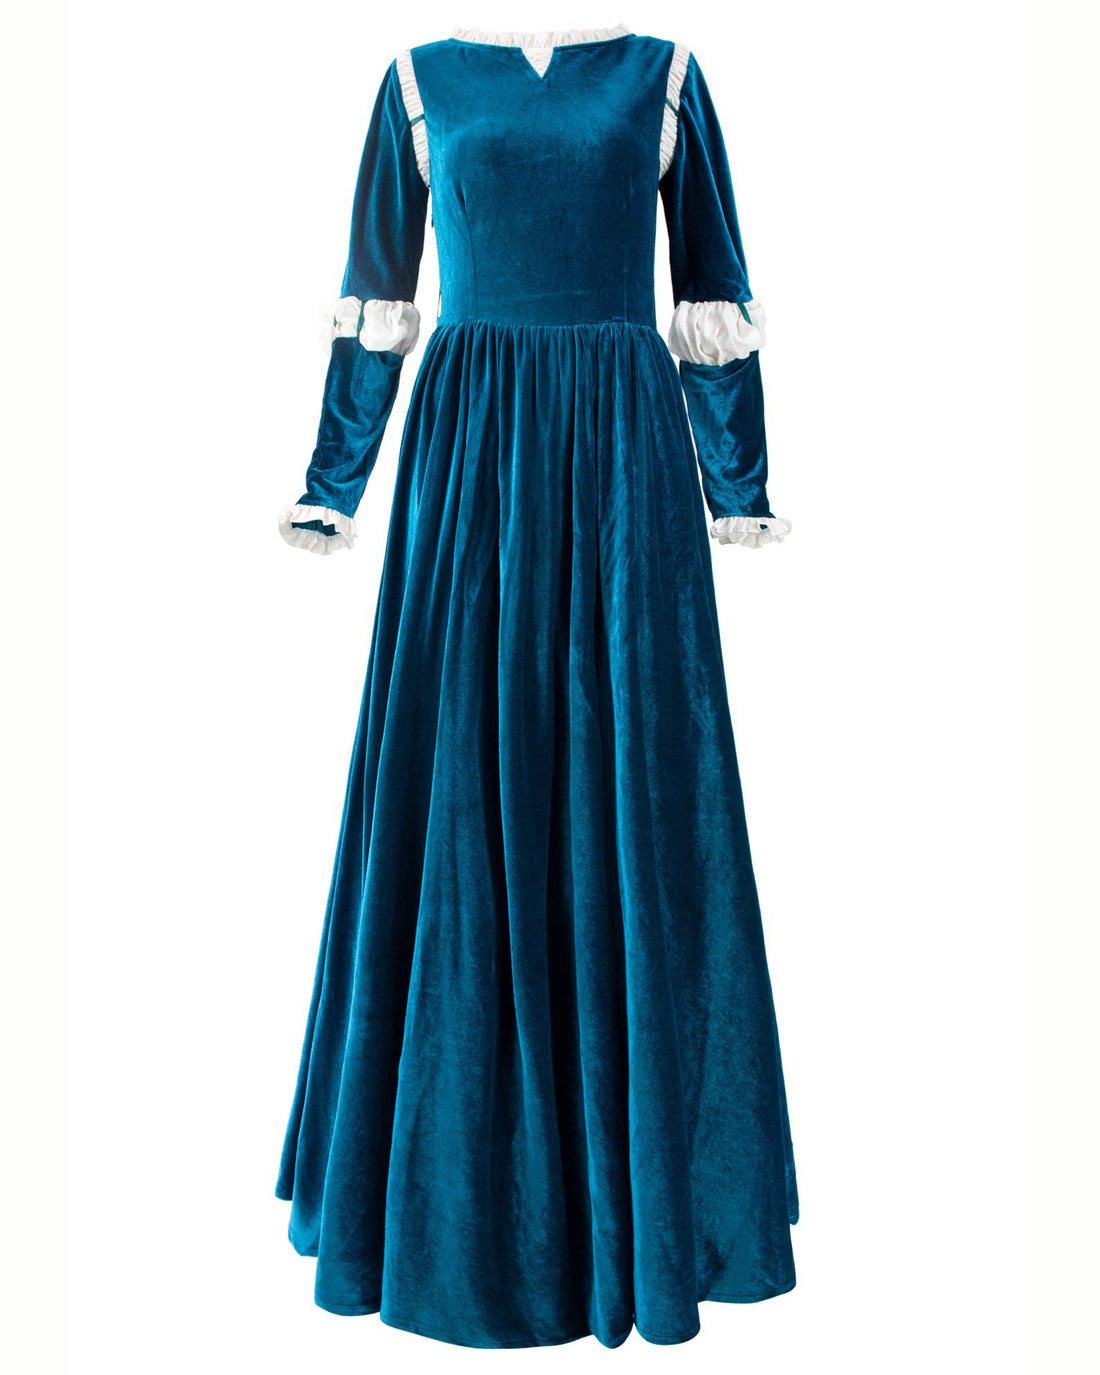 Courageuse Princesse Cosplay Costume Renaissance Médiévale Robe avec Carquois